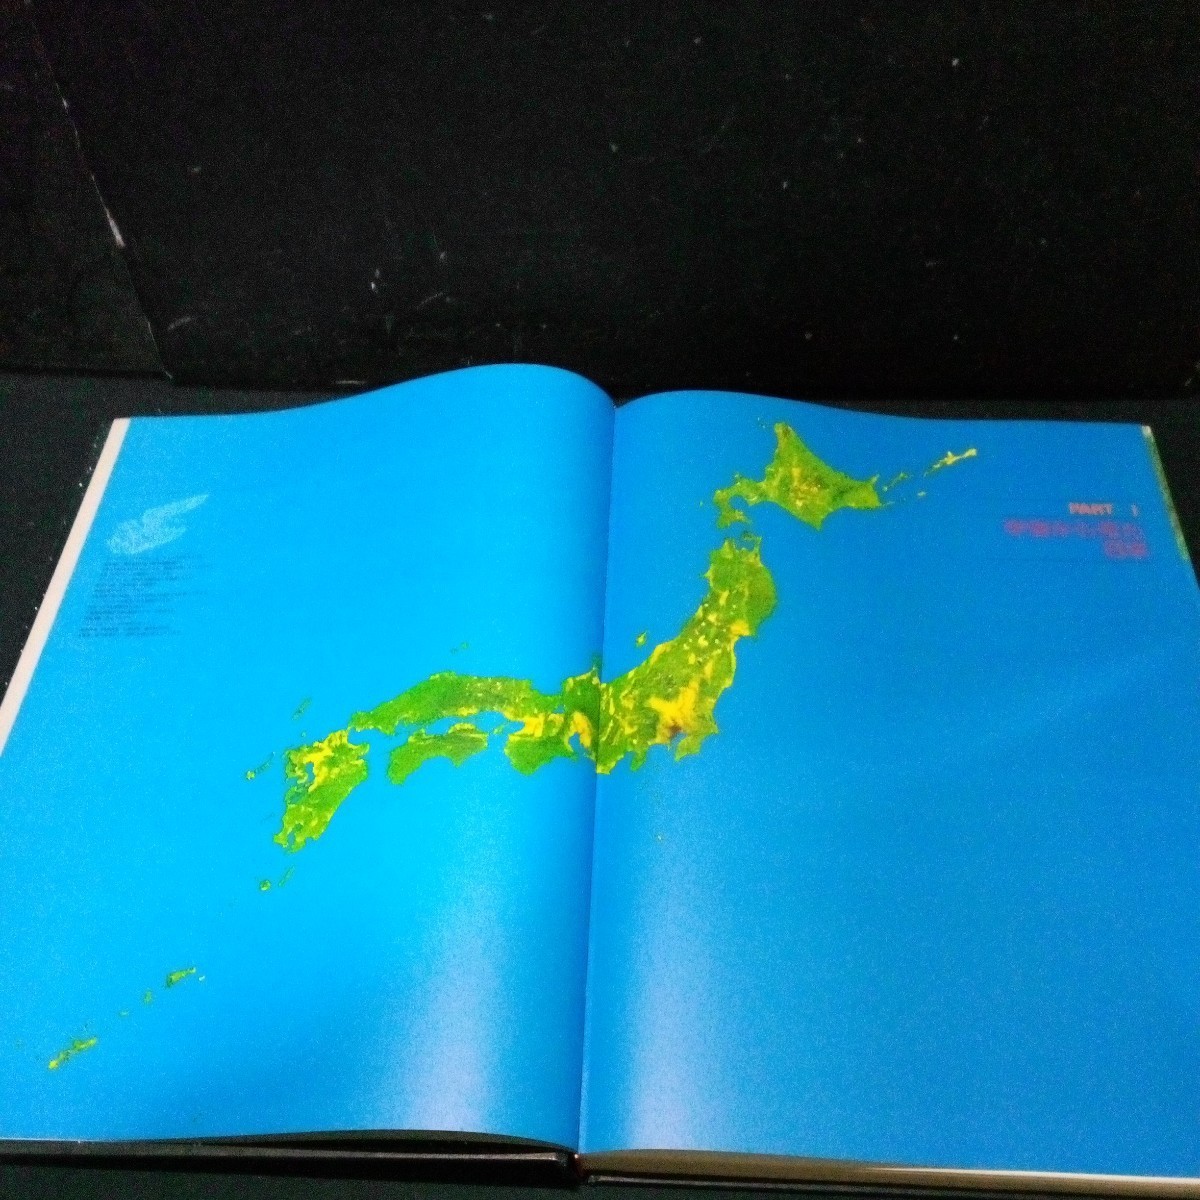 古書 日本地図 国内資料「ホームアトラス日本列島」 日本リーダーズダイジェスト 1983年発行(初版 1982年) 衛星写真 地形図 国内資料など_画像5